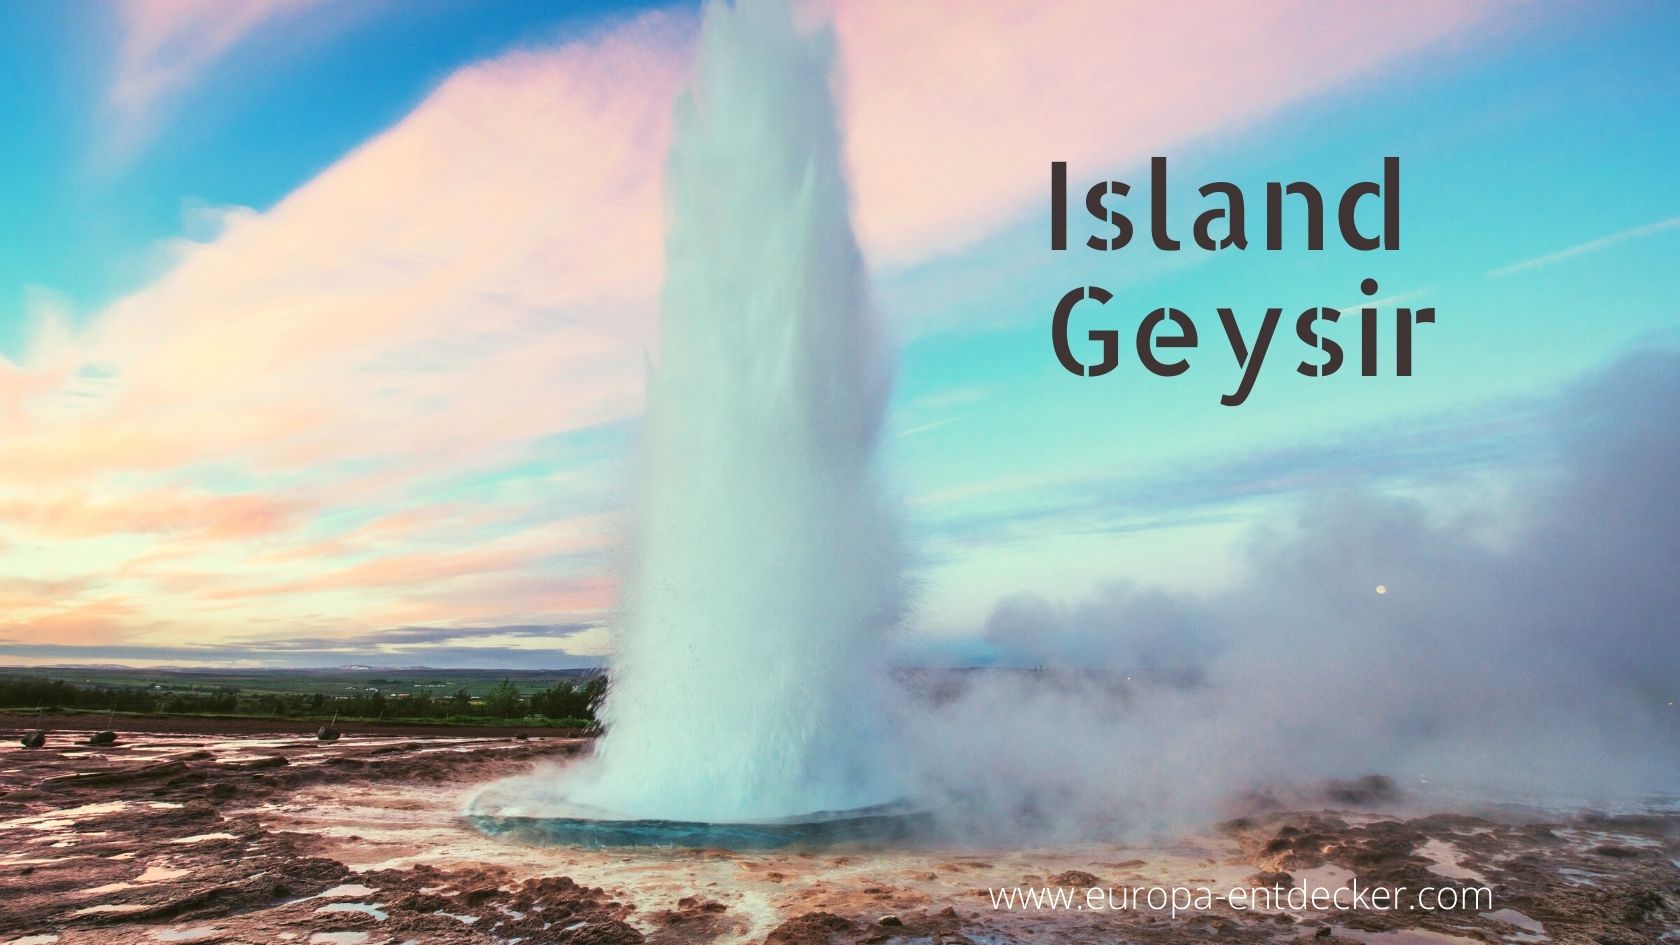 Der große Geysir Island